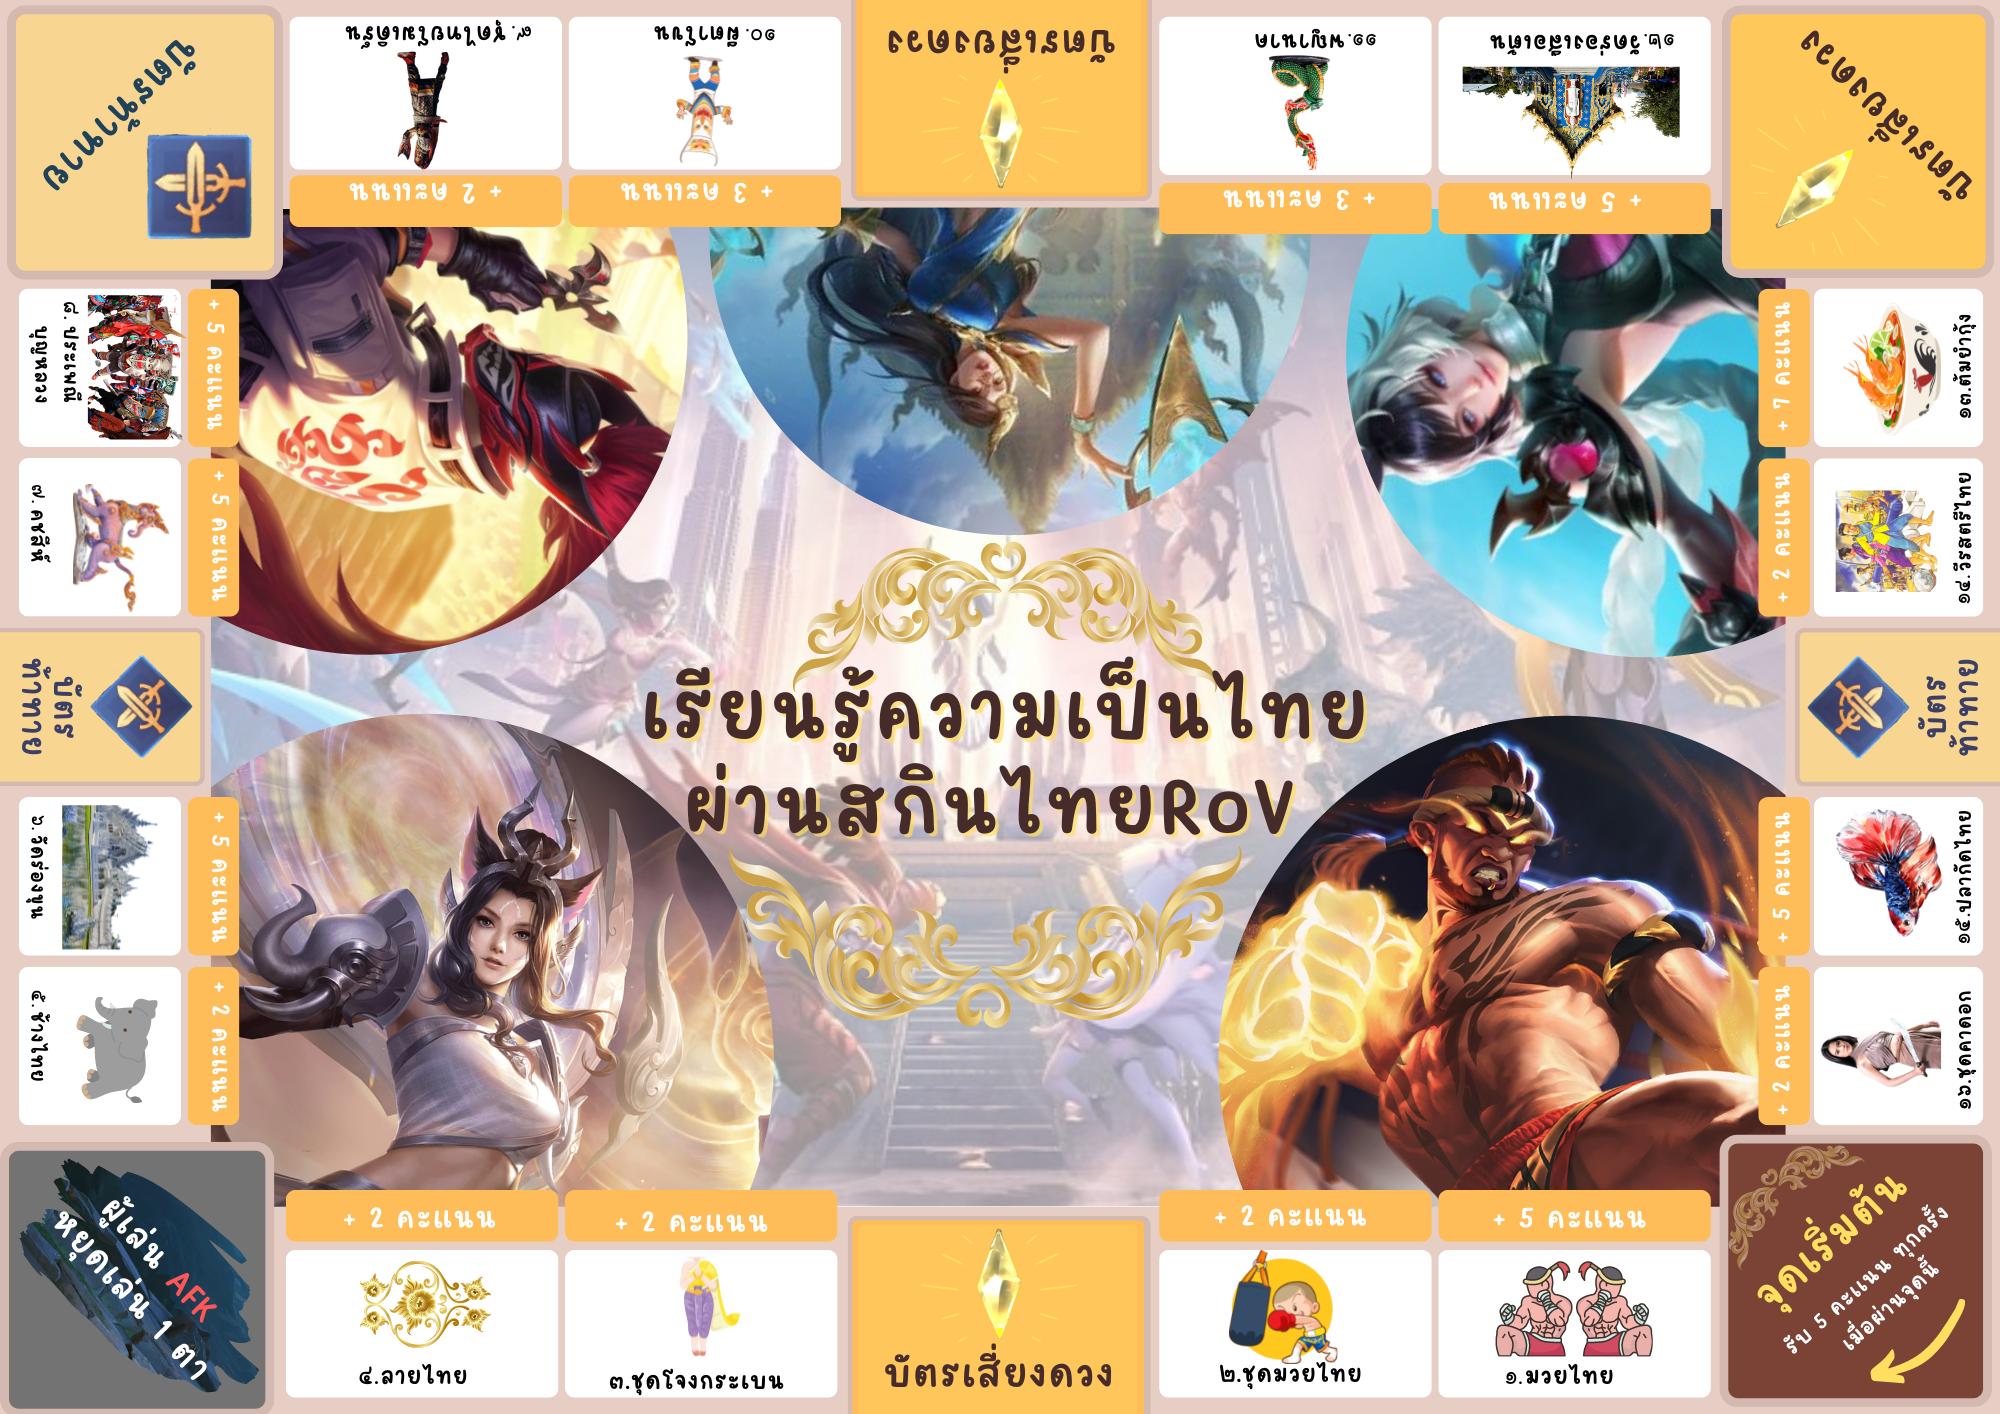 ภาพประกอบไอเดีย บอร์ดเกม เรียนรู้ความเป็นไทย ผ่านสกินไทยRoV